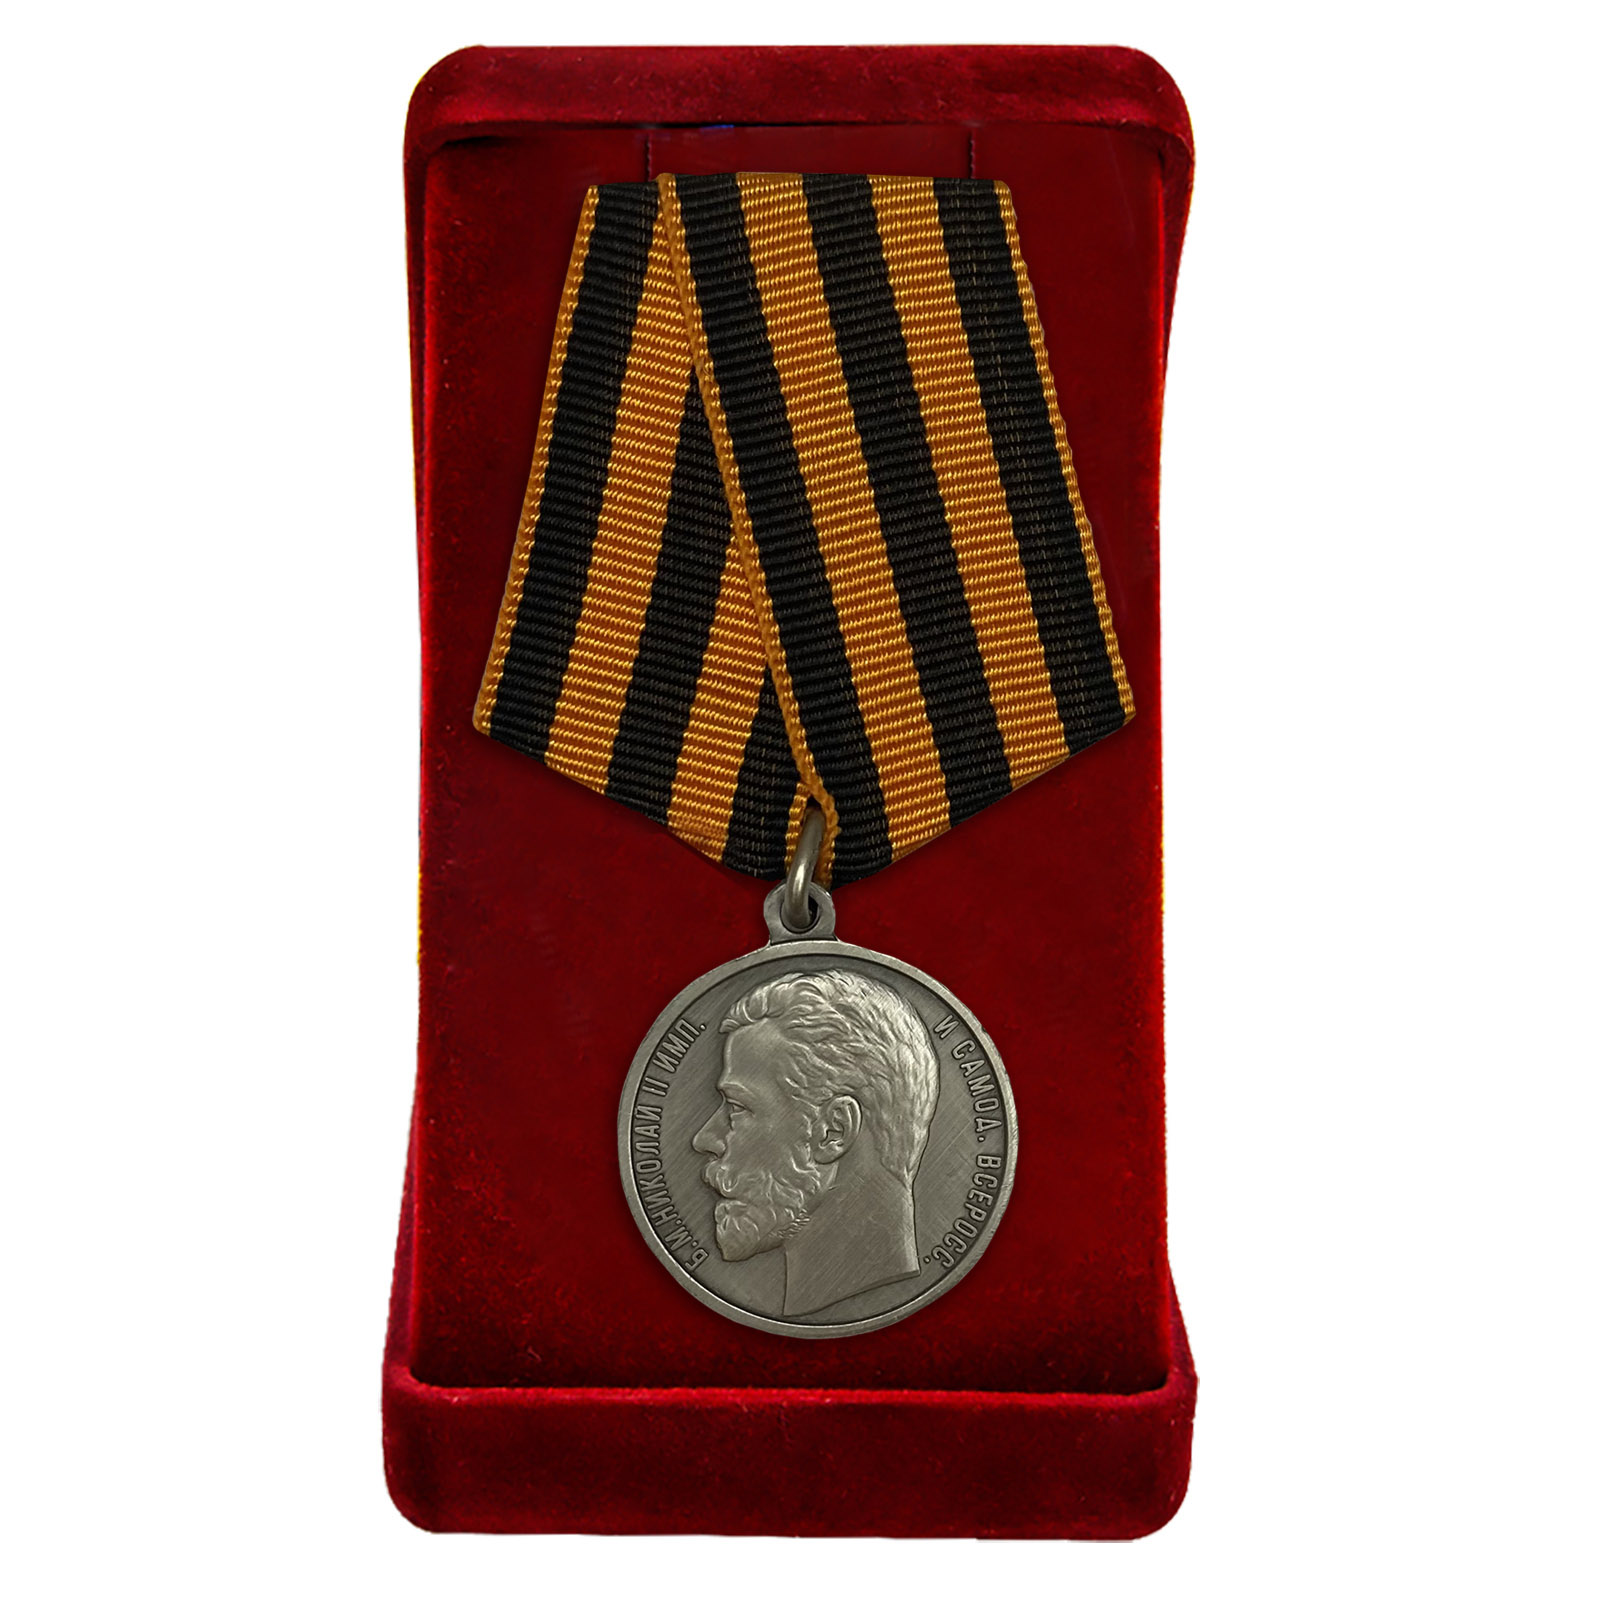 Купить георгиевскую медаль Николая 2 За храбрость 4 степени в подарок